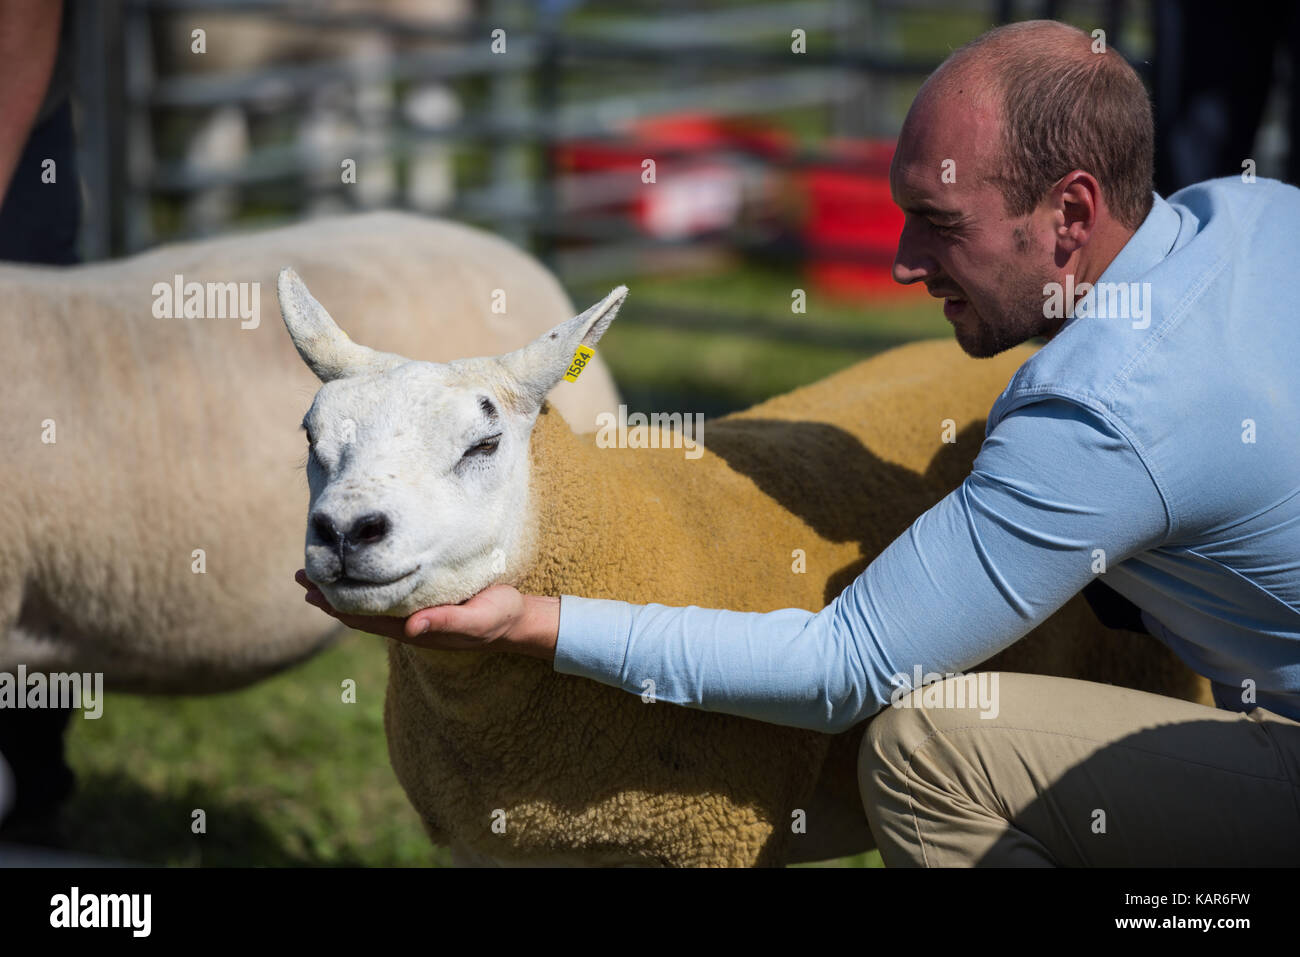 Texal pecore giudicare, Southern Agricultural Show, Isola di Man. Foto Stock